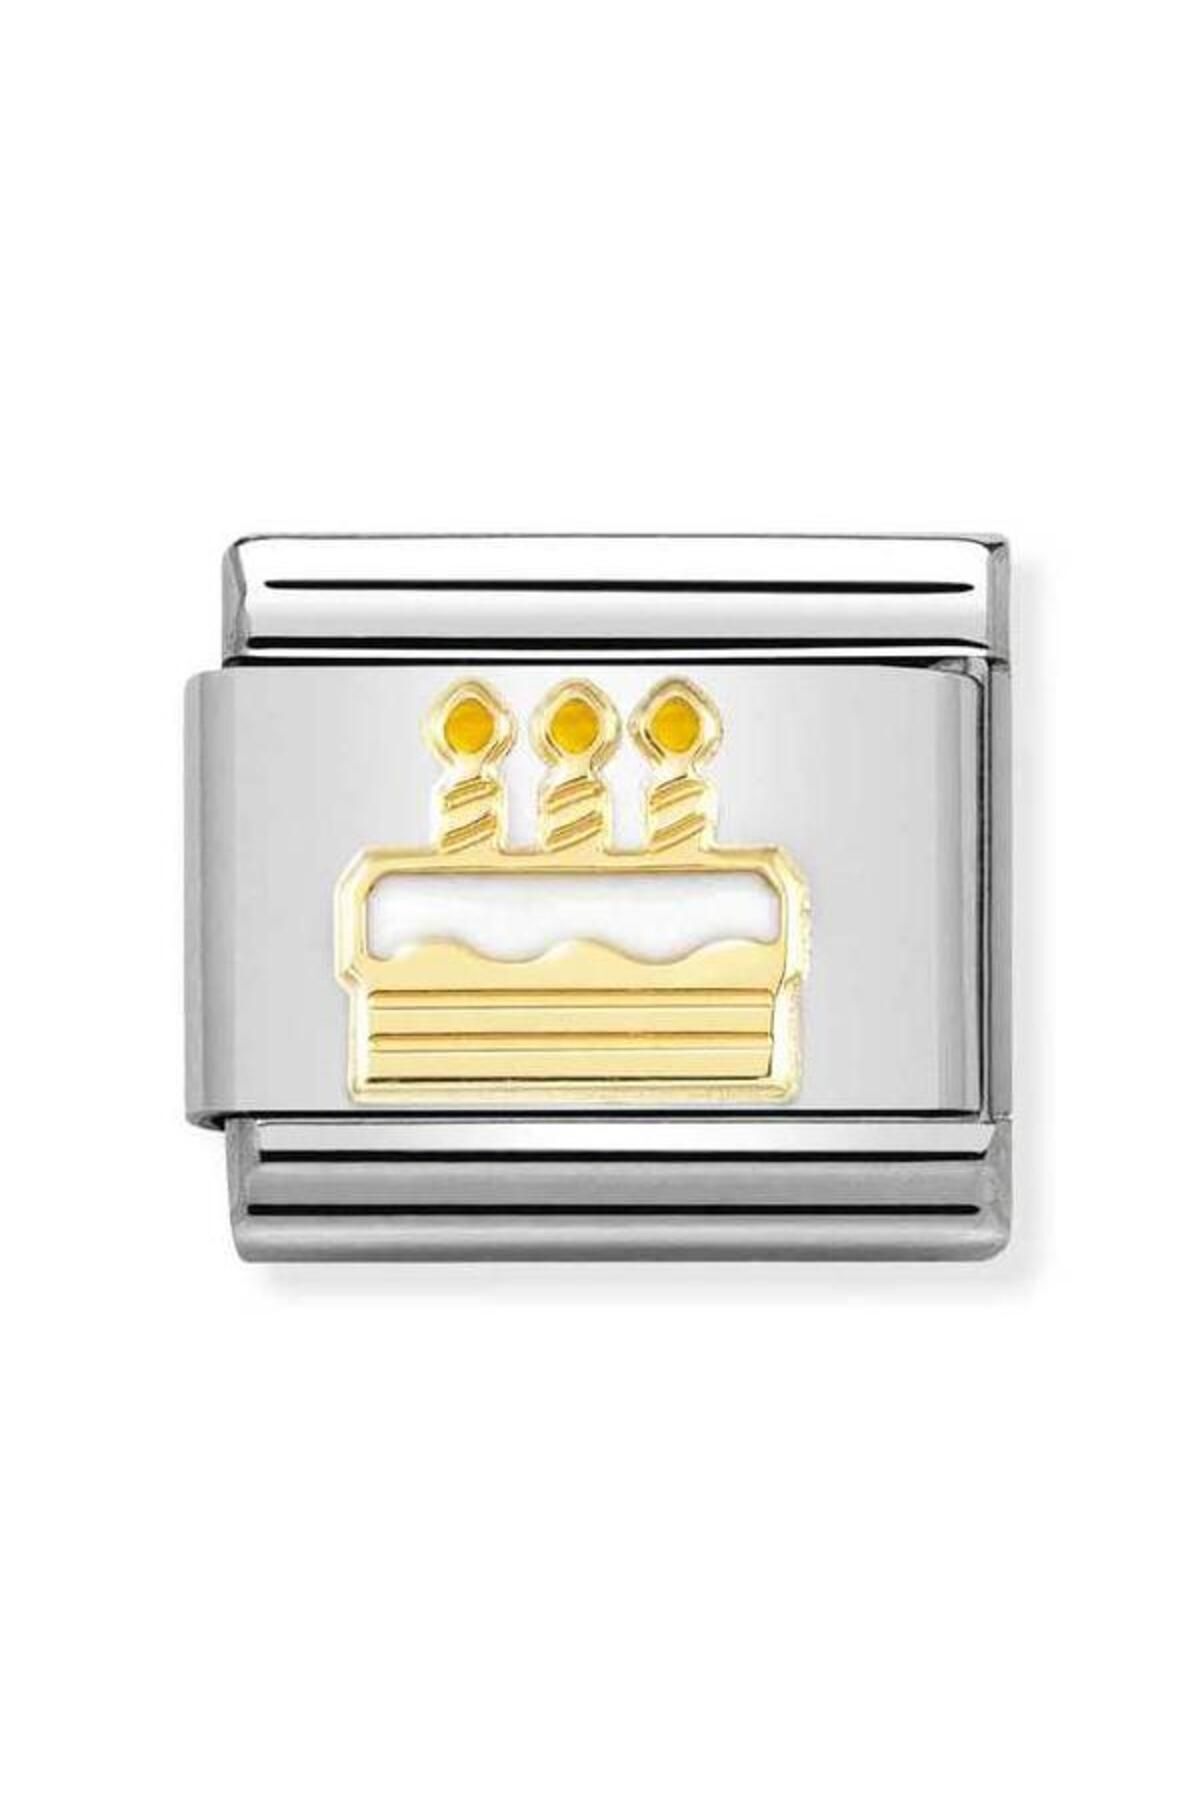 NOMİNATİON Composable Classic Dekoratif Link - Semboller - Doğumgünü Pastası - 18k Altın